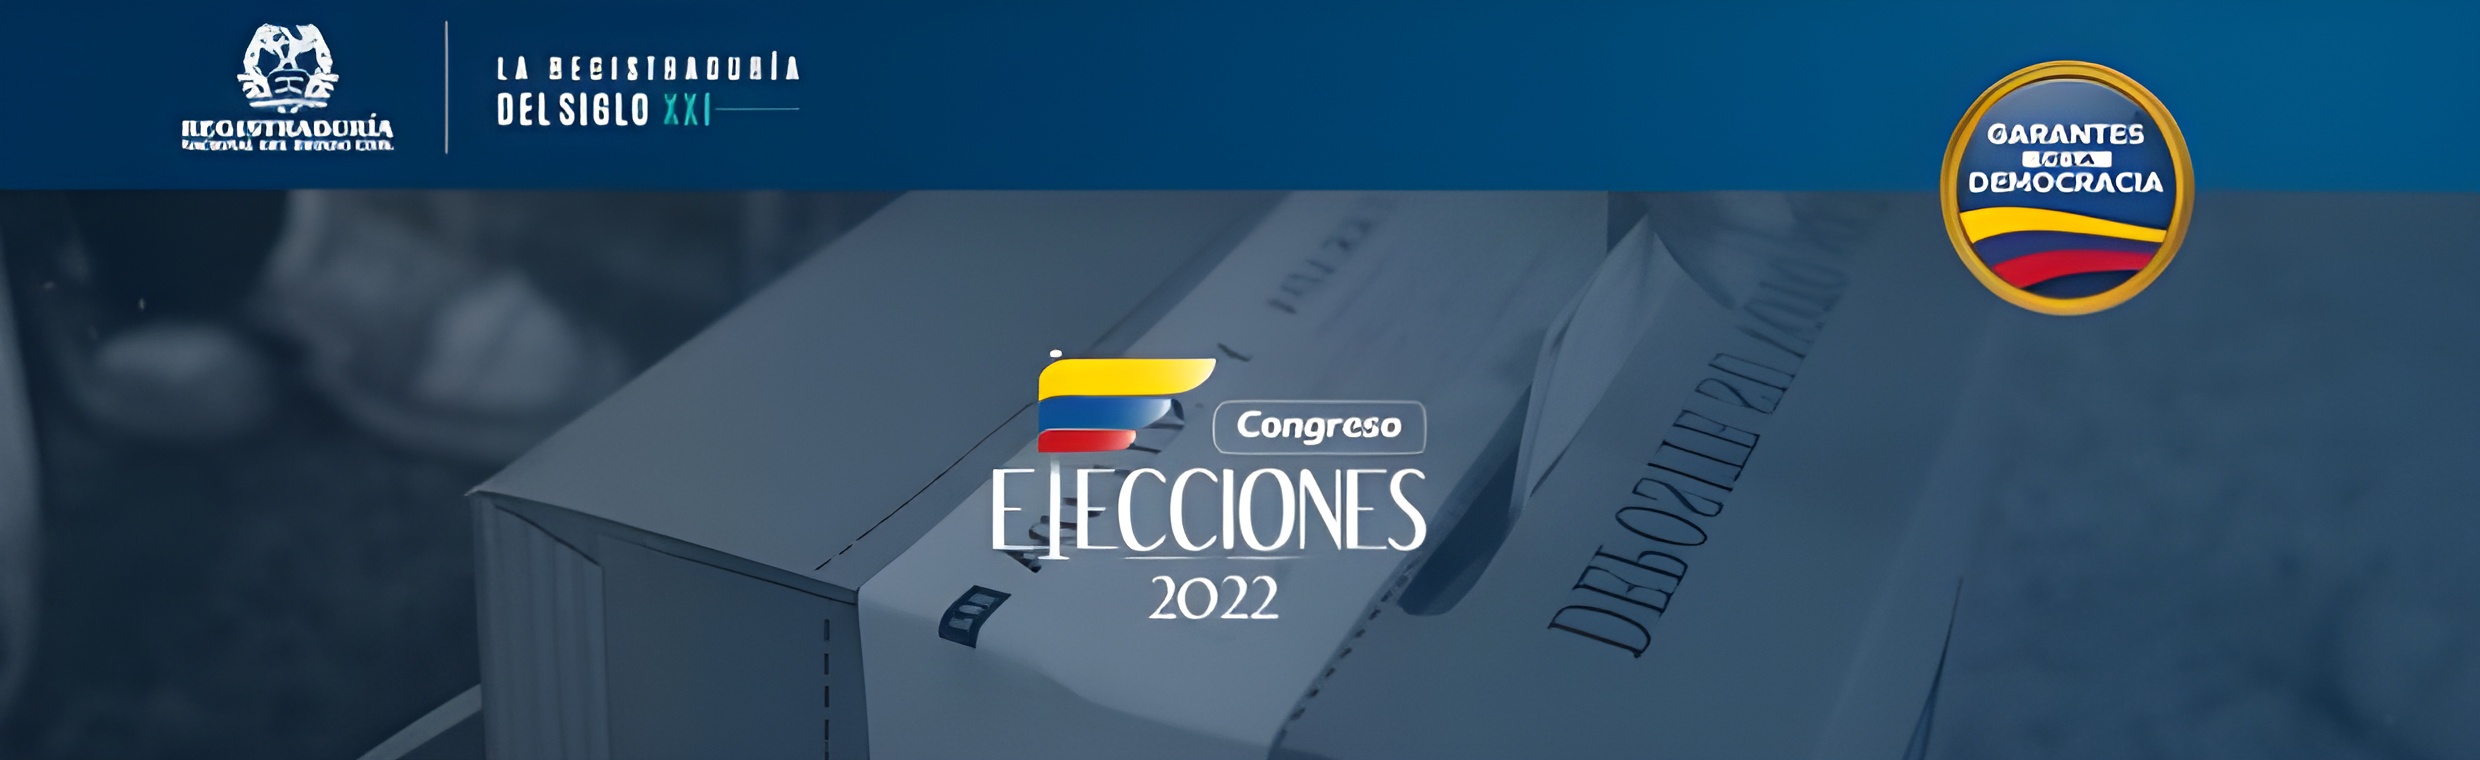 Cómo consultar mi puesto de votación Elecciones Colombia 2022